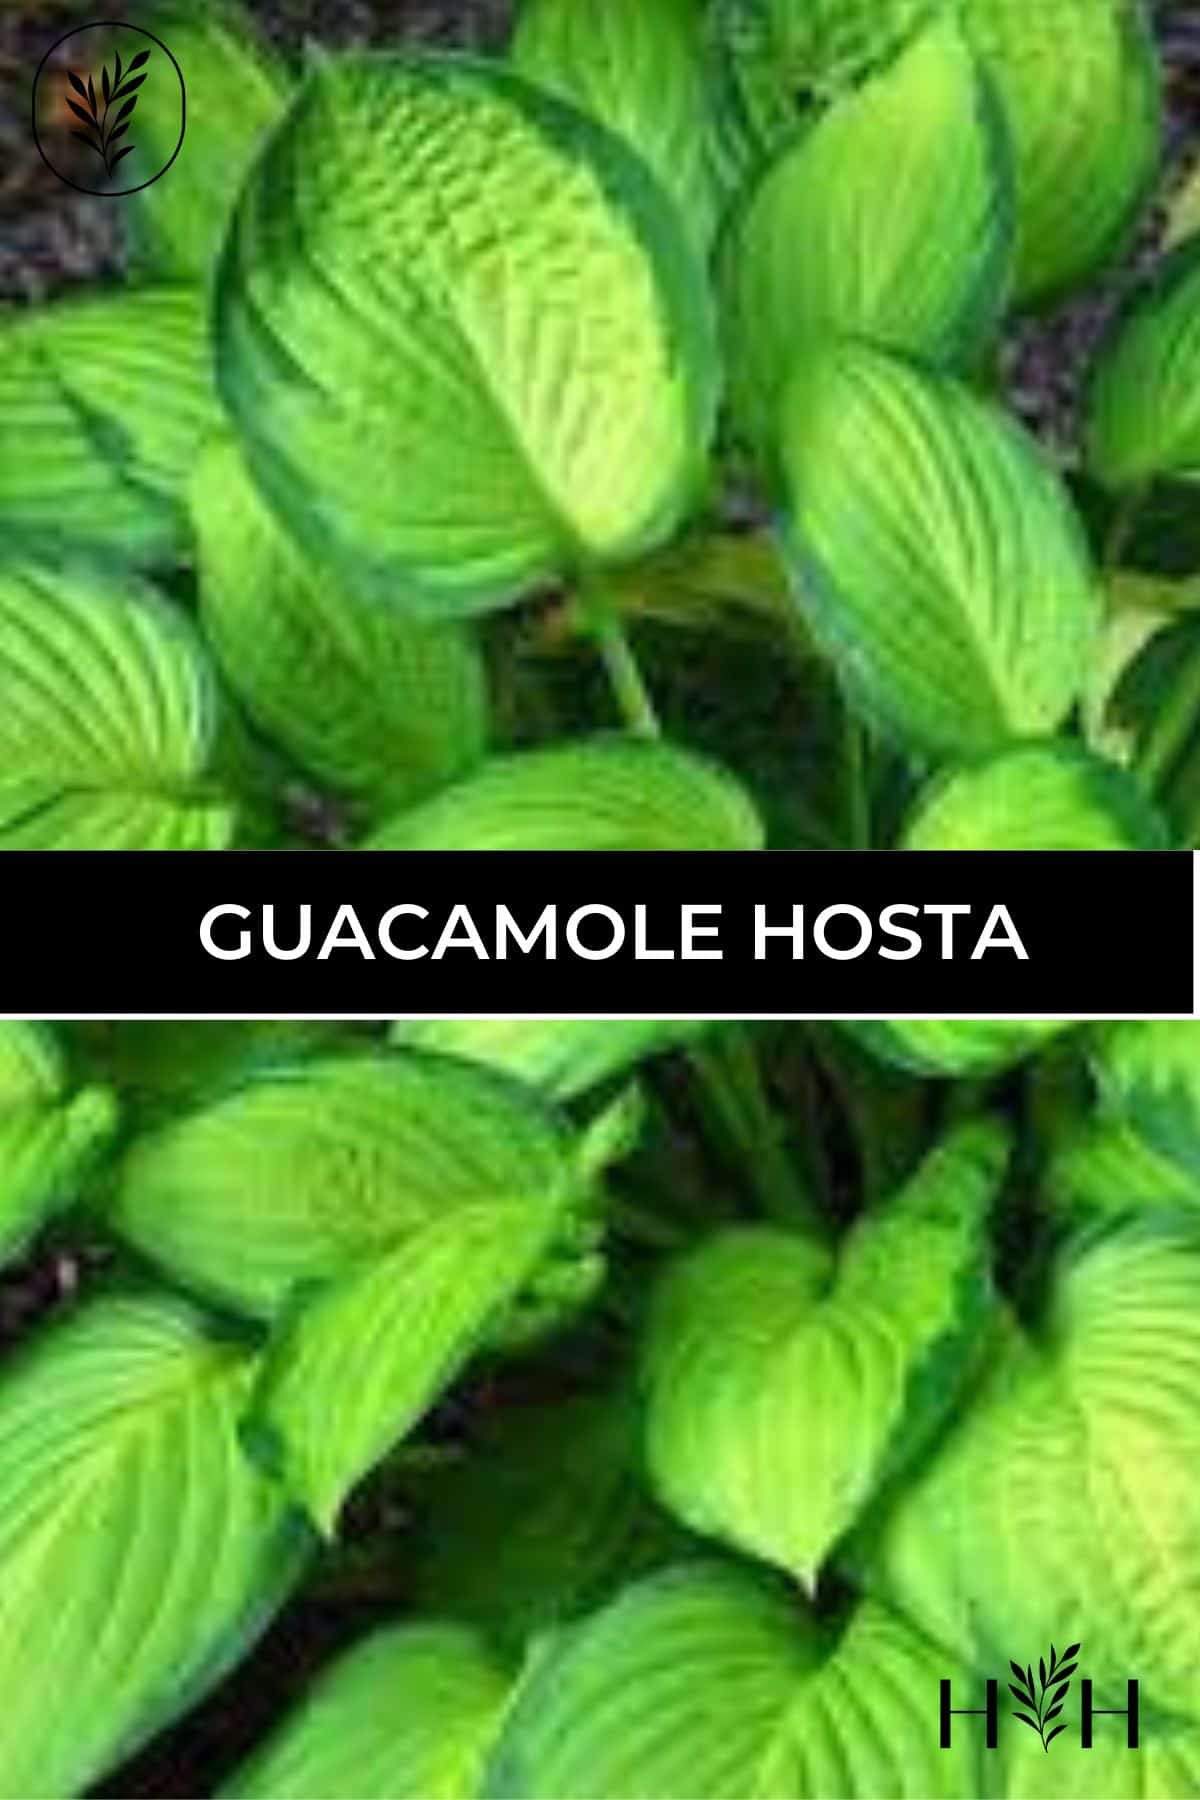 Guacamole hosta via @home4theharvest